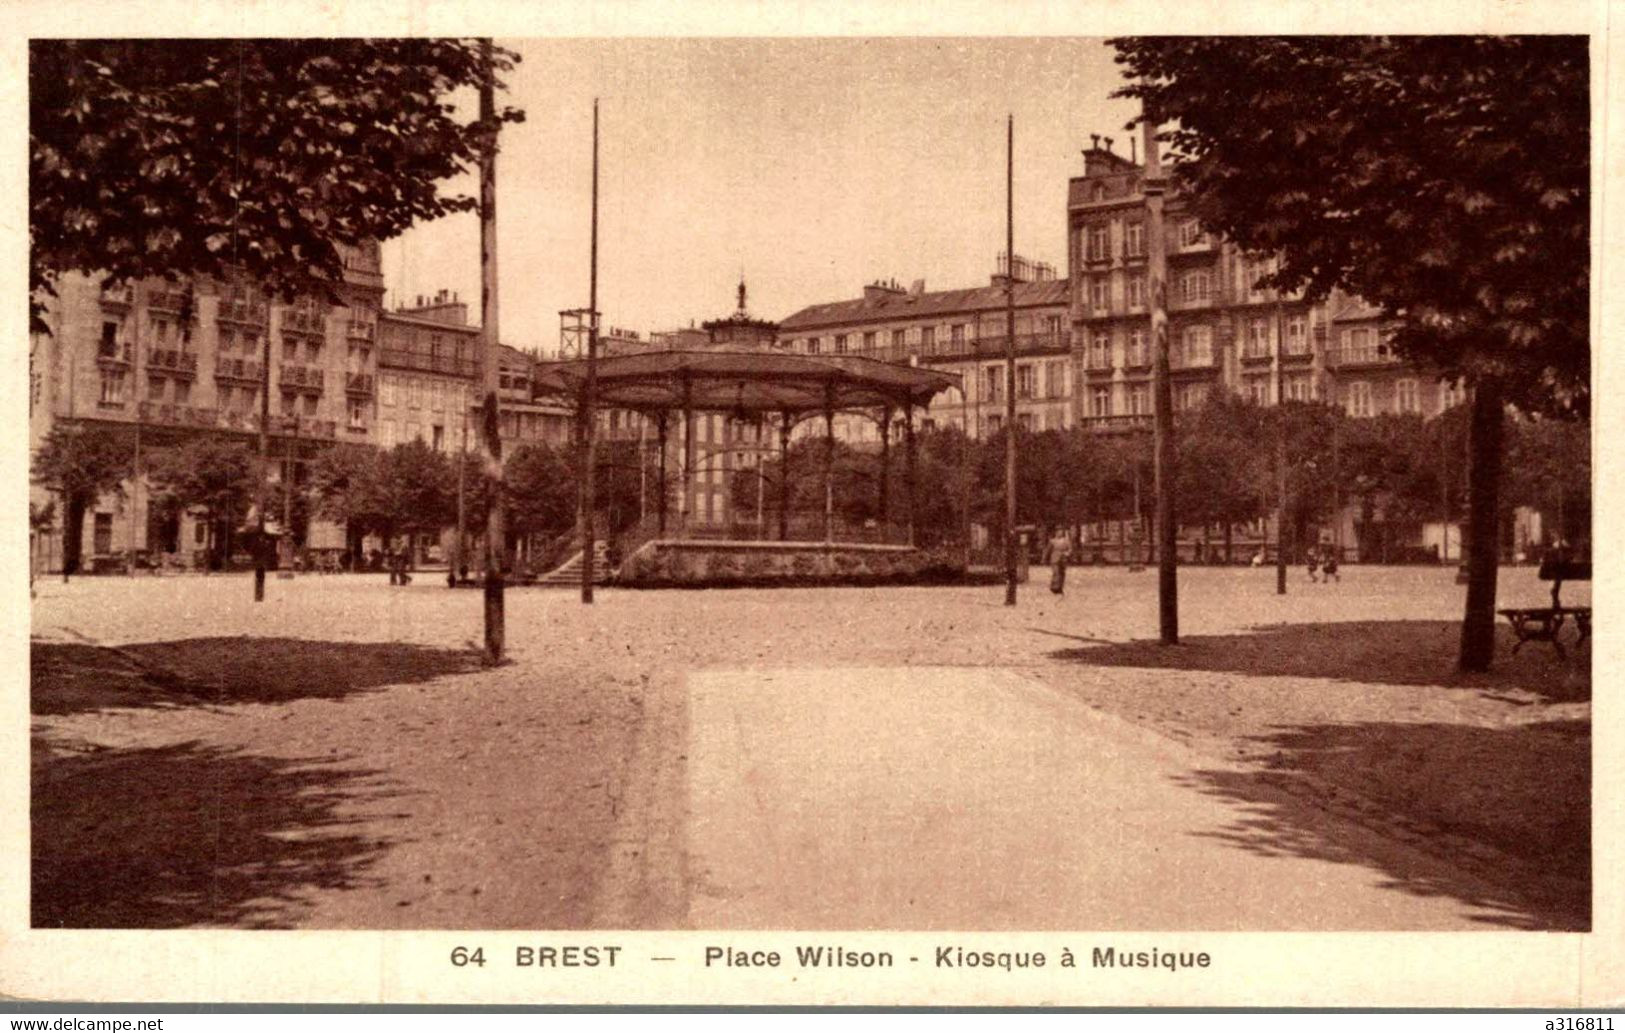 BREST PLACE WILSON KIOSQUE A MUSIQUE - Brest